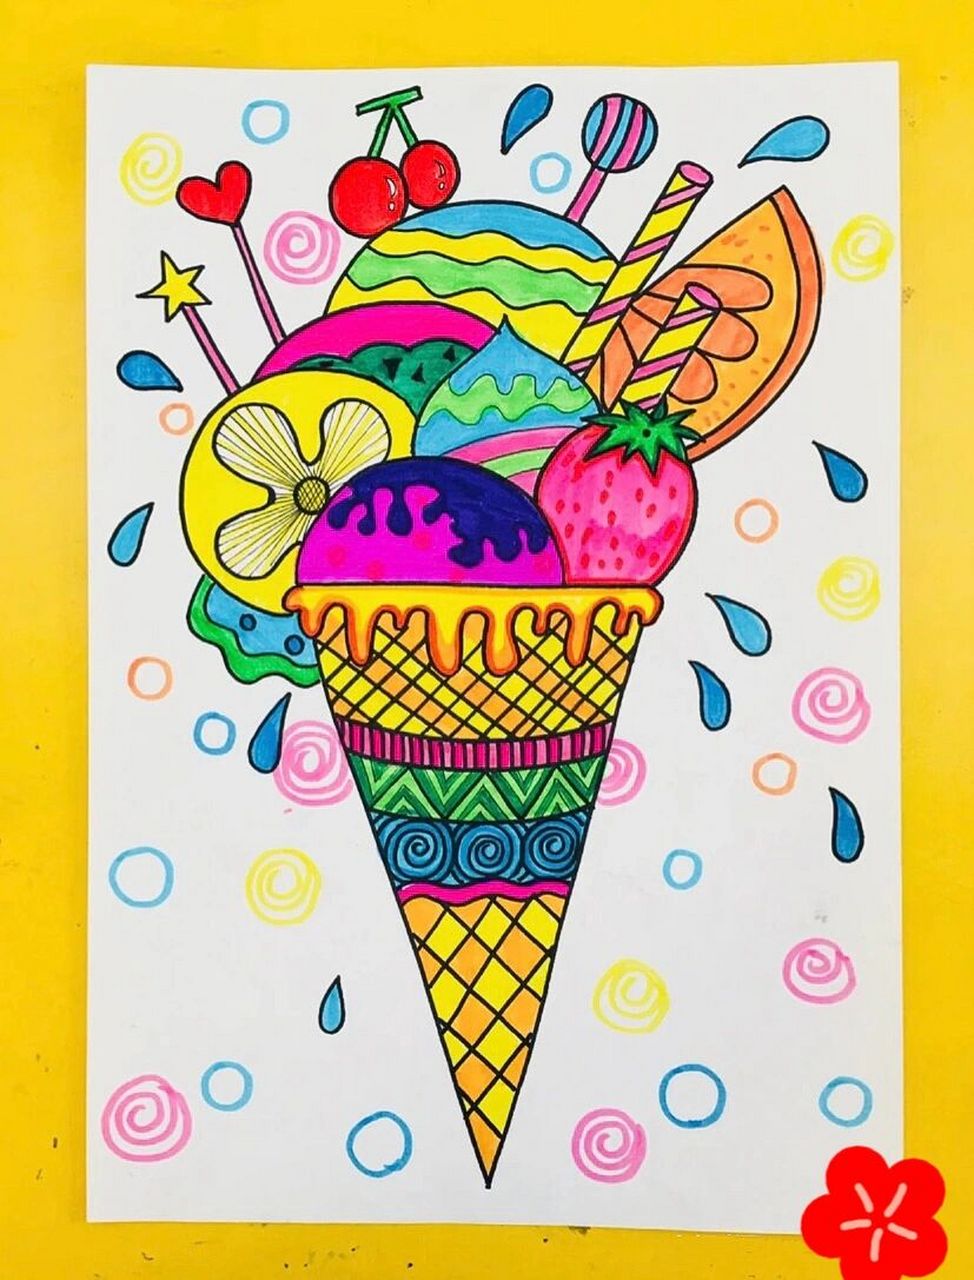 第二十四课:儿童画冰淇淋 第二十四课:冰淇淋 知识目标:学会冰淇淋的